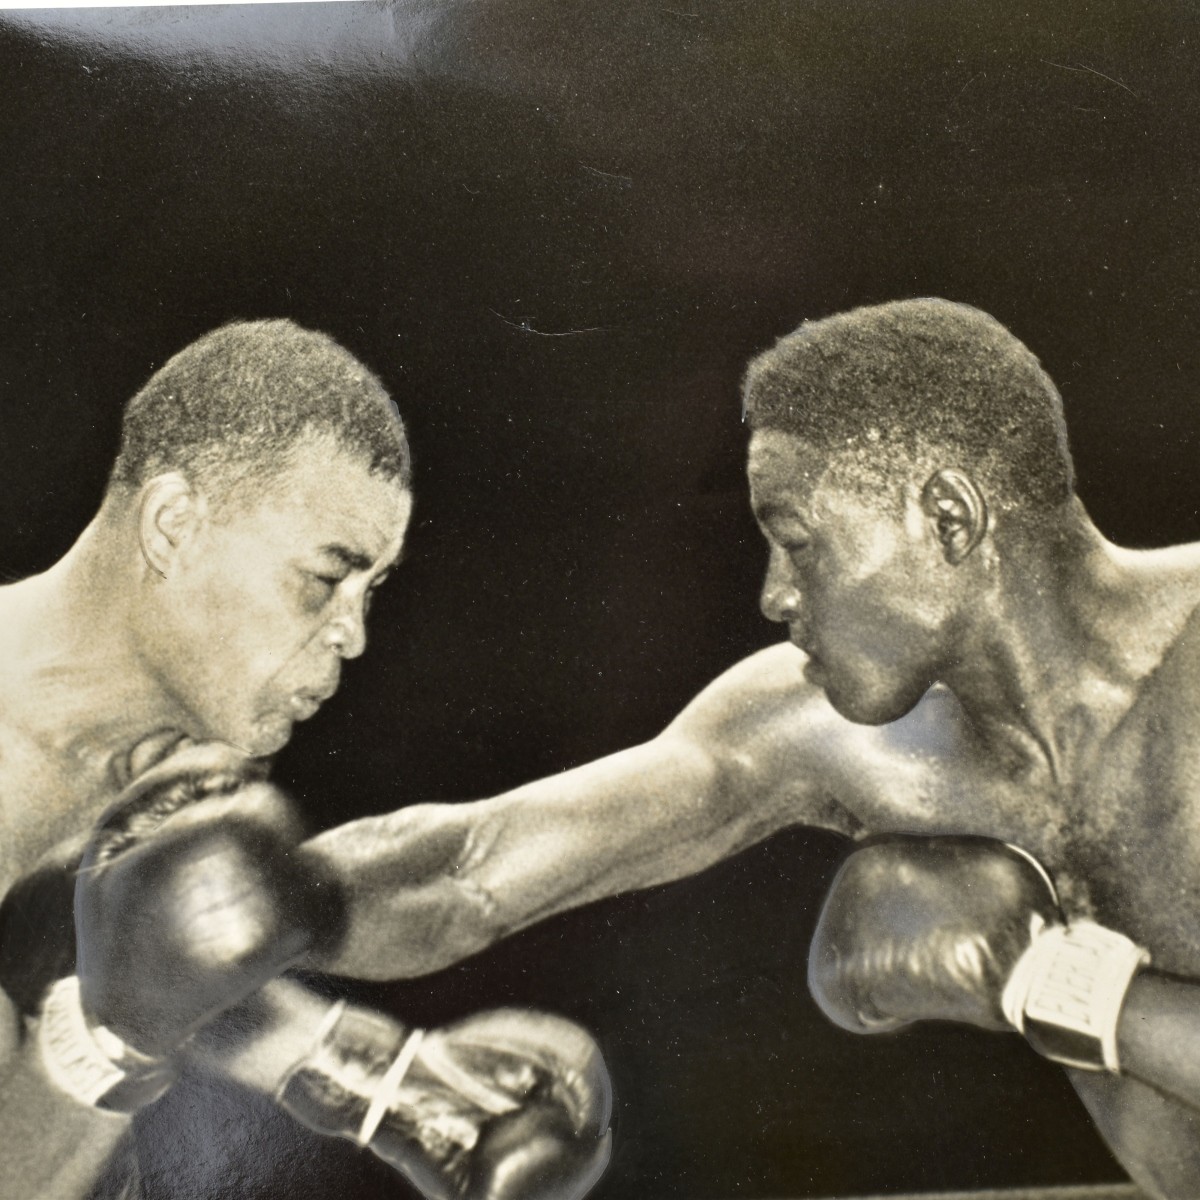 Five Boxing Photograph Memorabilia